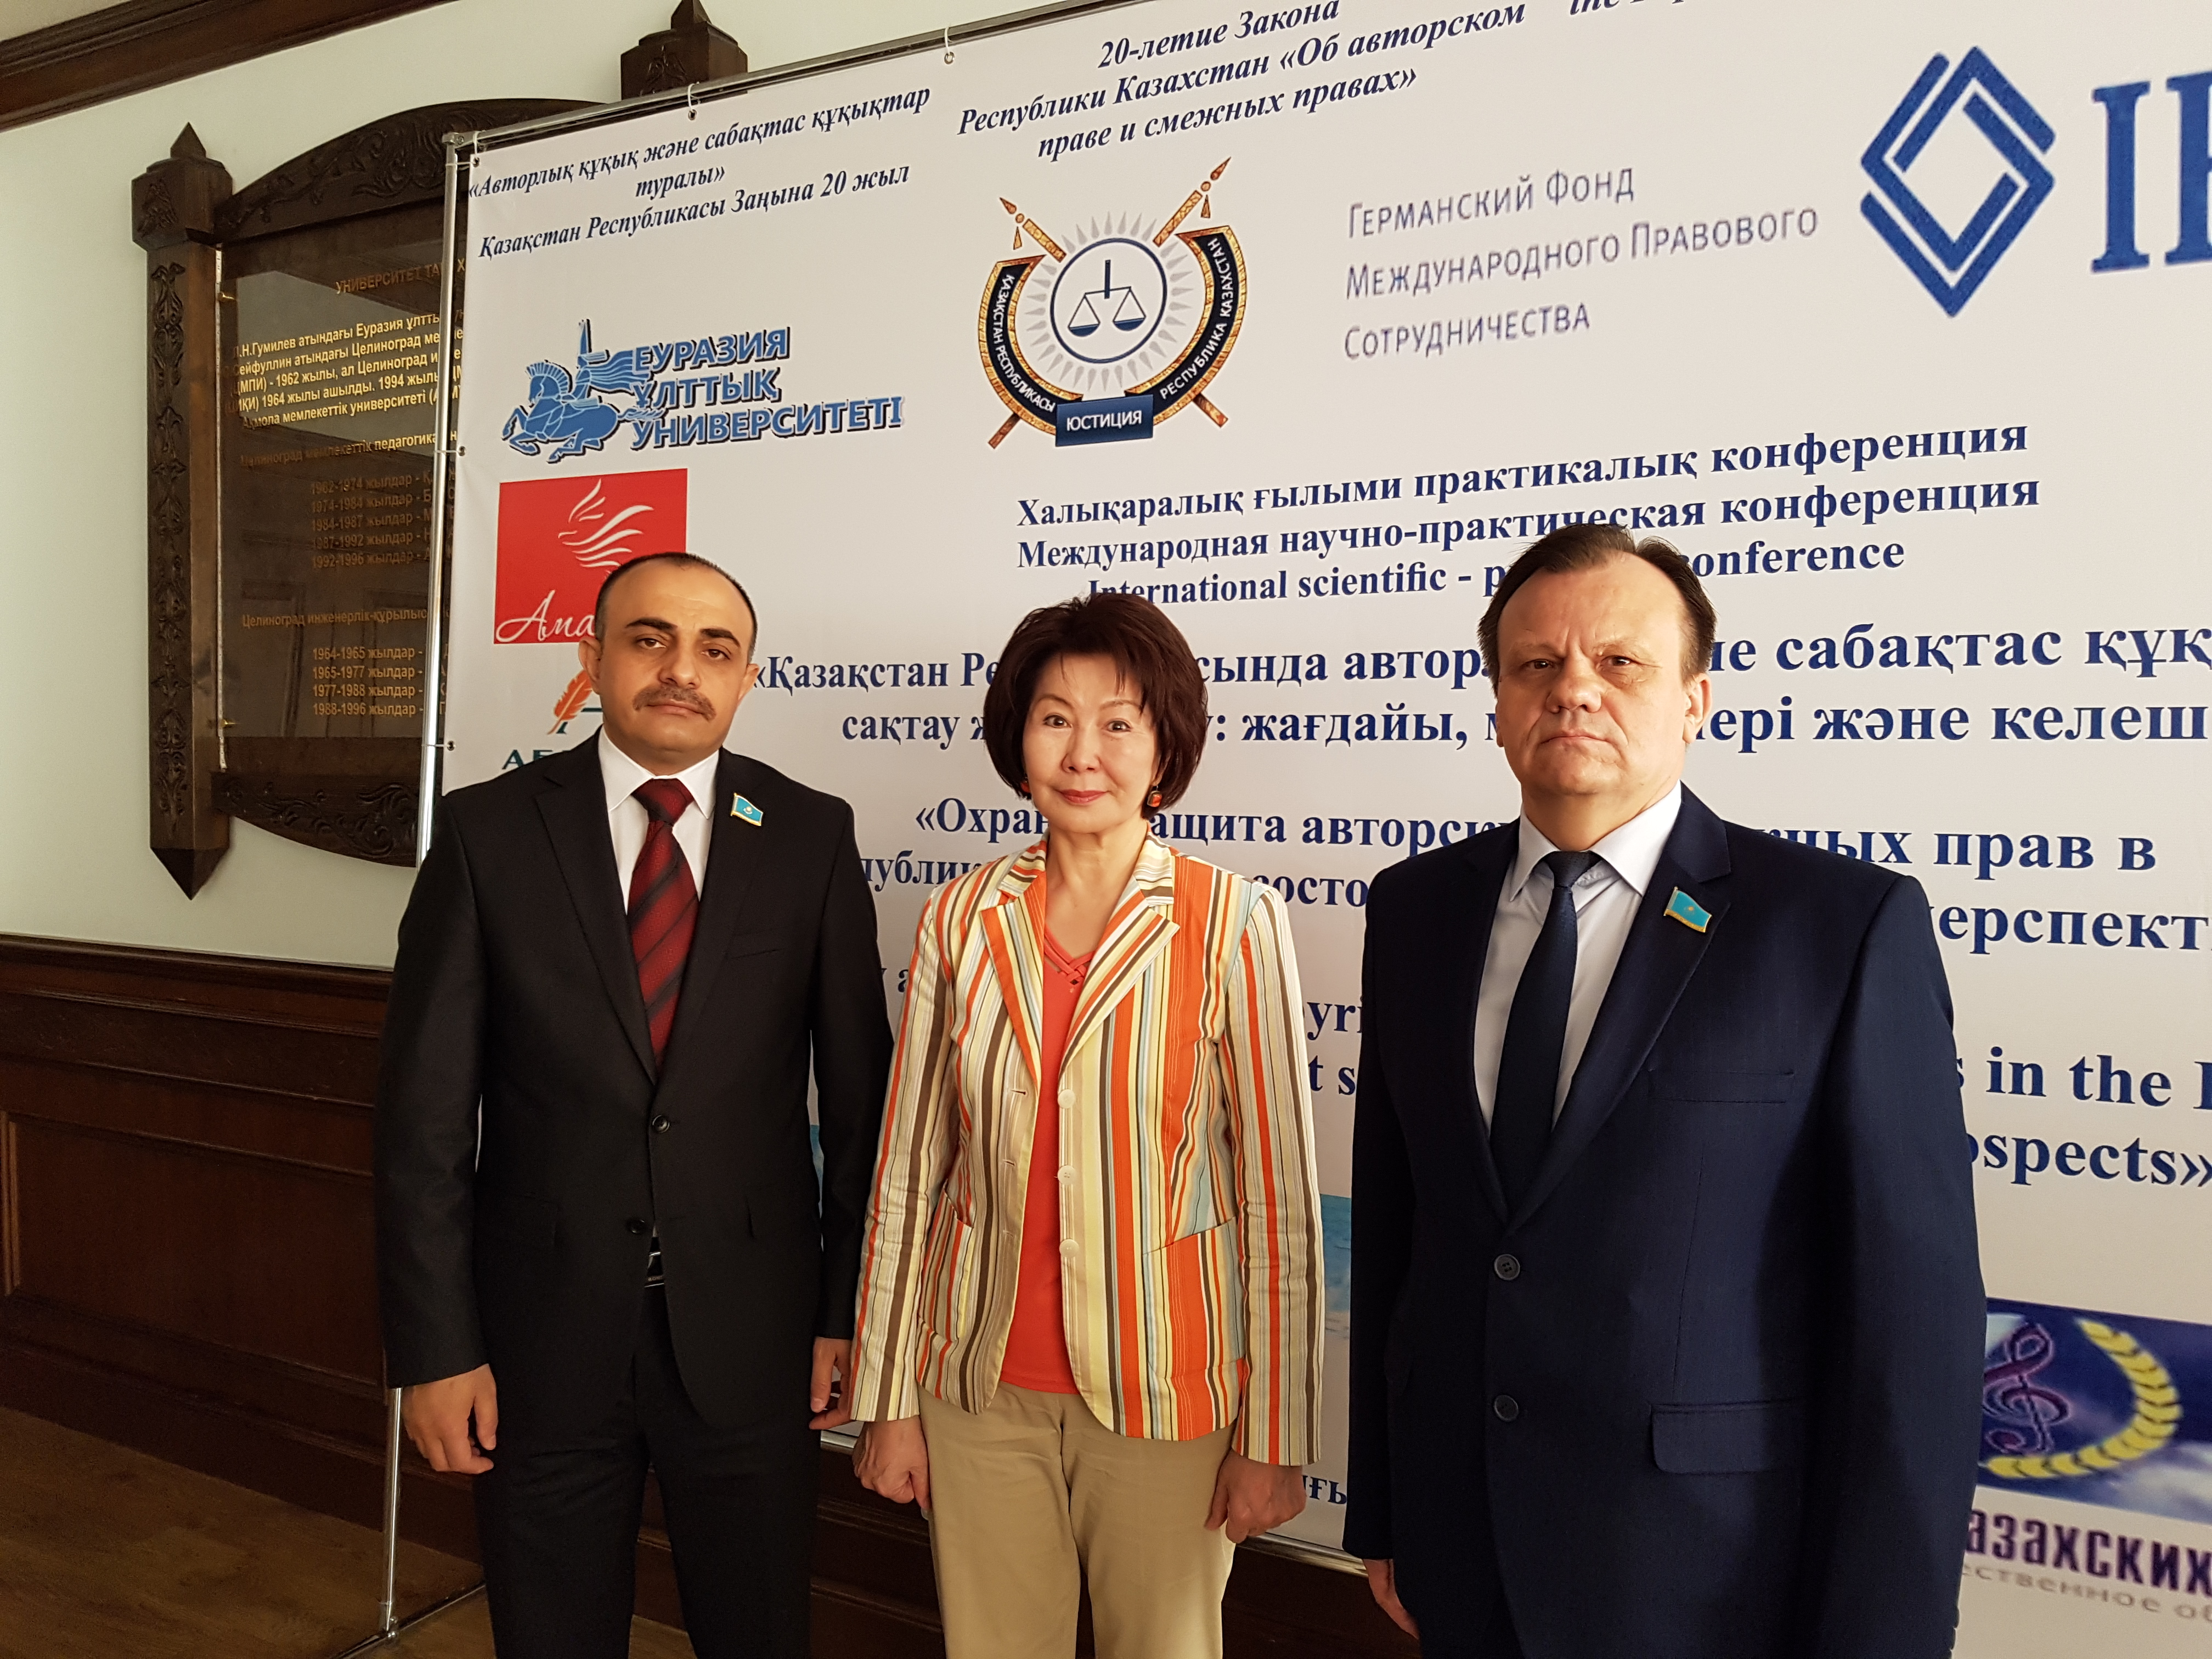  Международная конференция «Охрана и защита авторских и смежных прав в  Республике Казахстан: состояние, проблемы и перспективы» 